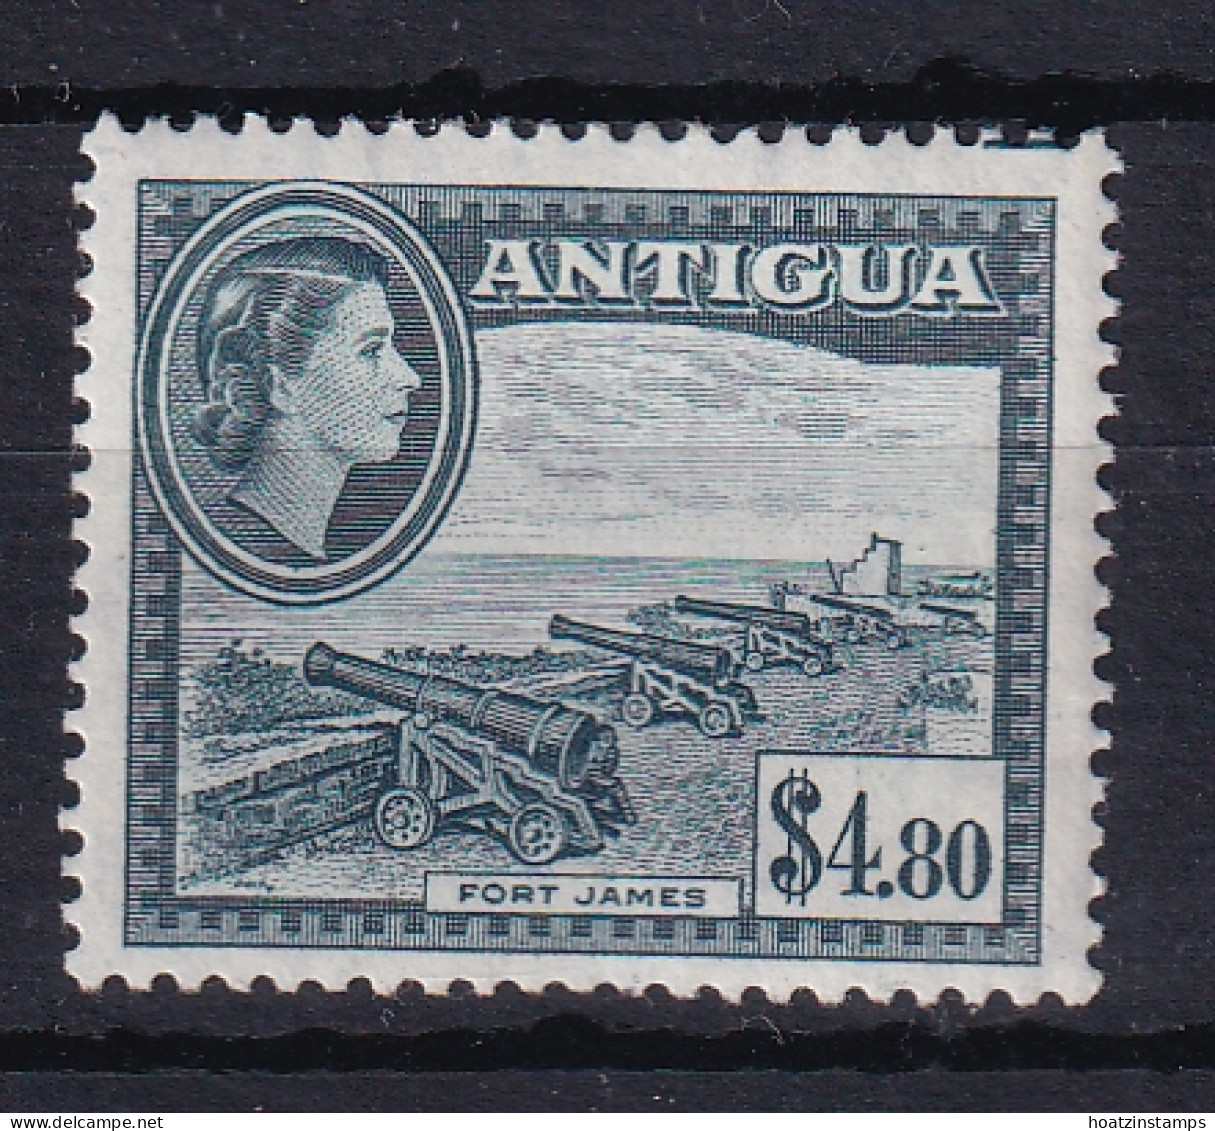 Antigua: 1953/62   QE II - Pictorial     SG134    $4.80      MH - 1858-1960 Colonie Britannique